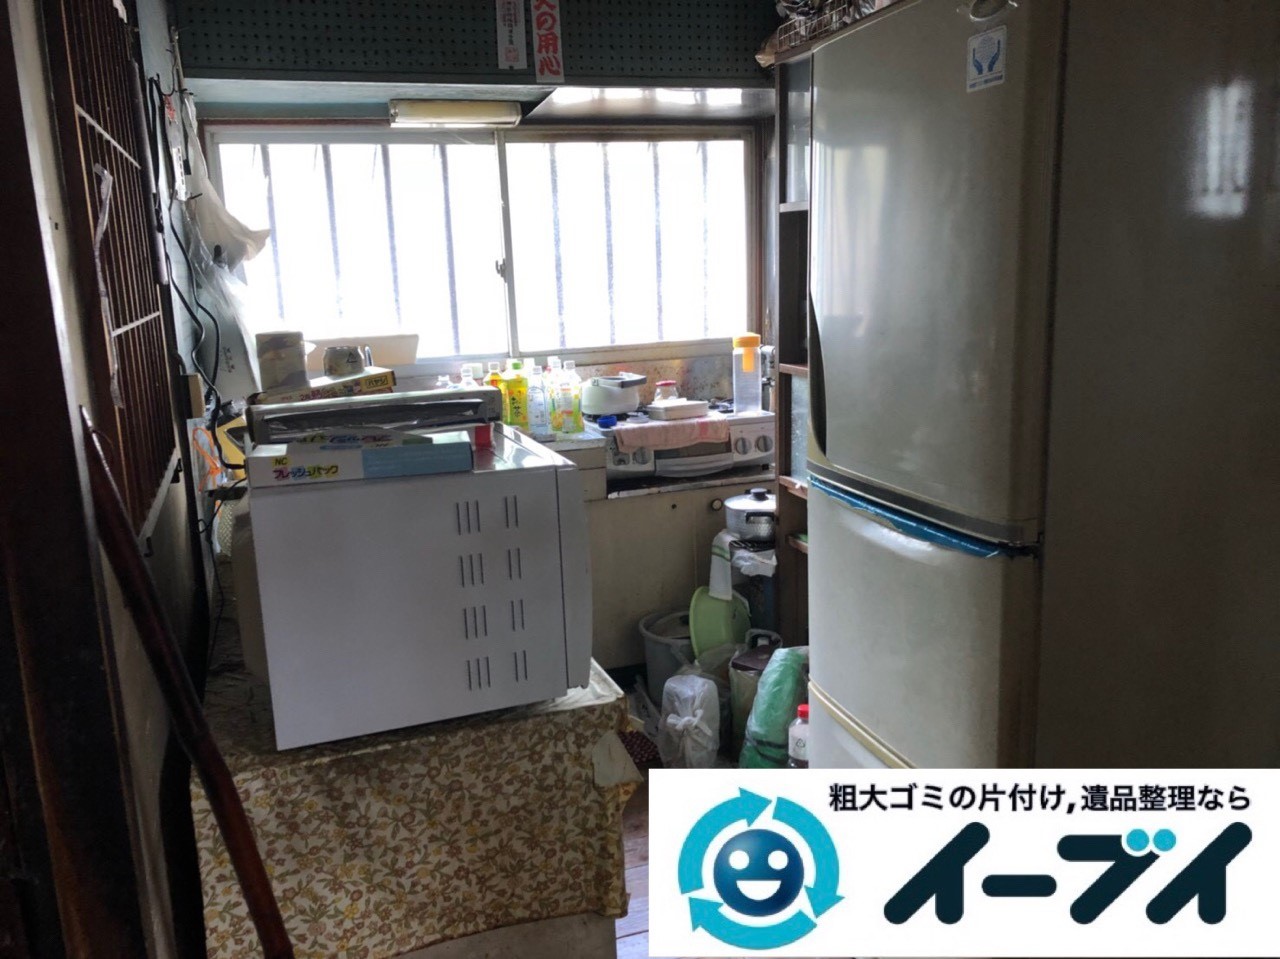 2018年11月21日大阪府箕面市で実家の退去に伴い古くて使わなくなった家財一式の処分回収。写真4